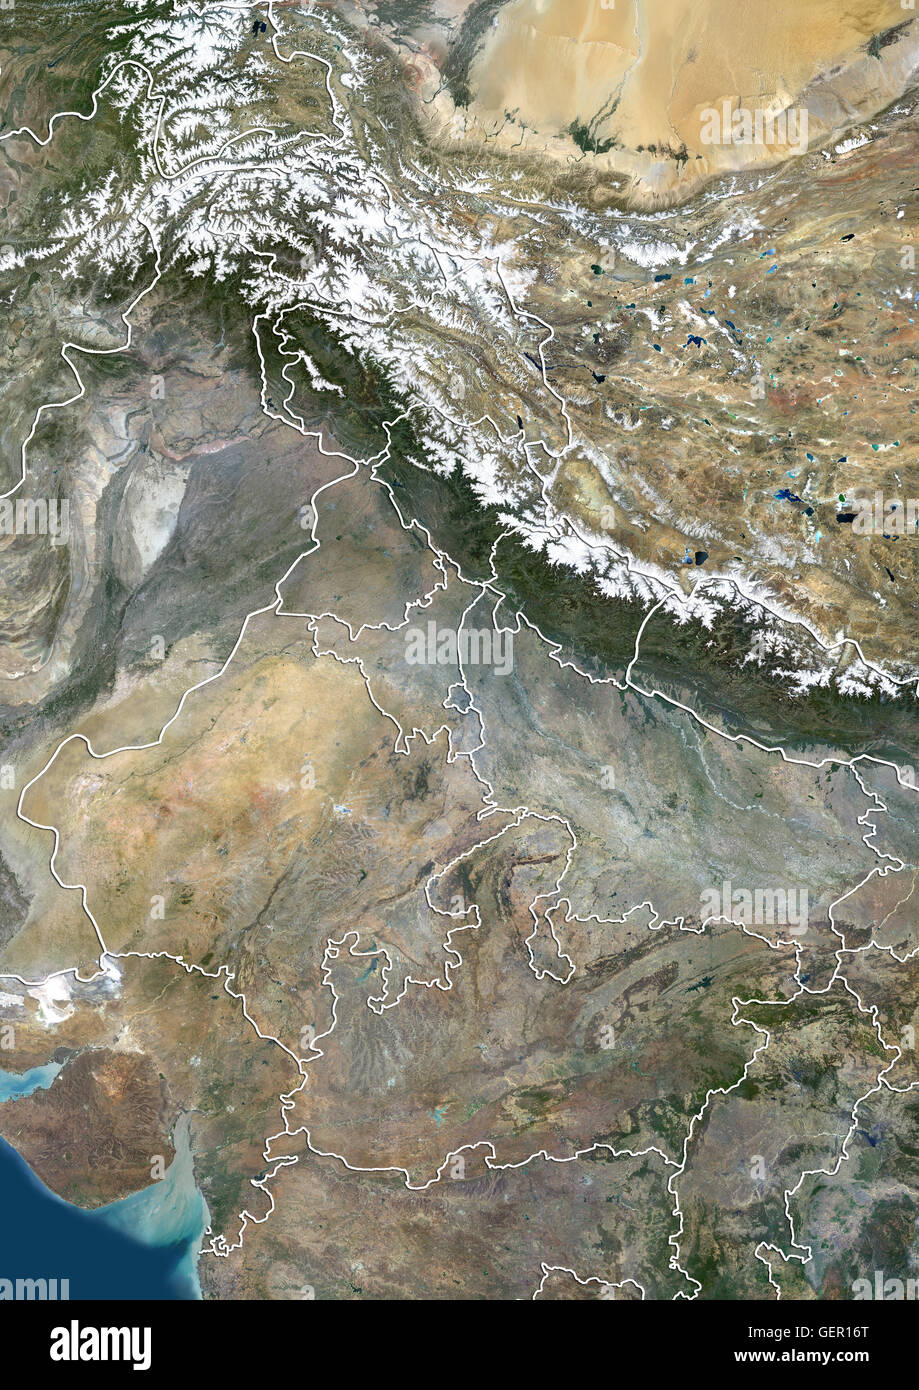 Vue Satellite de l'Inde du Nord avec les limites administratives, y compris les limites du Jammu-et-Cachemire zones contestées. Cette image a été compilé à partir de données acquises par satellite Landsat 8 en 2014. Banque D'Images